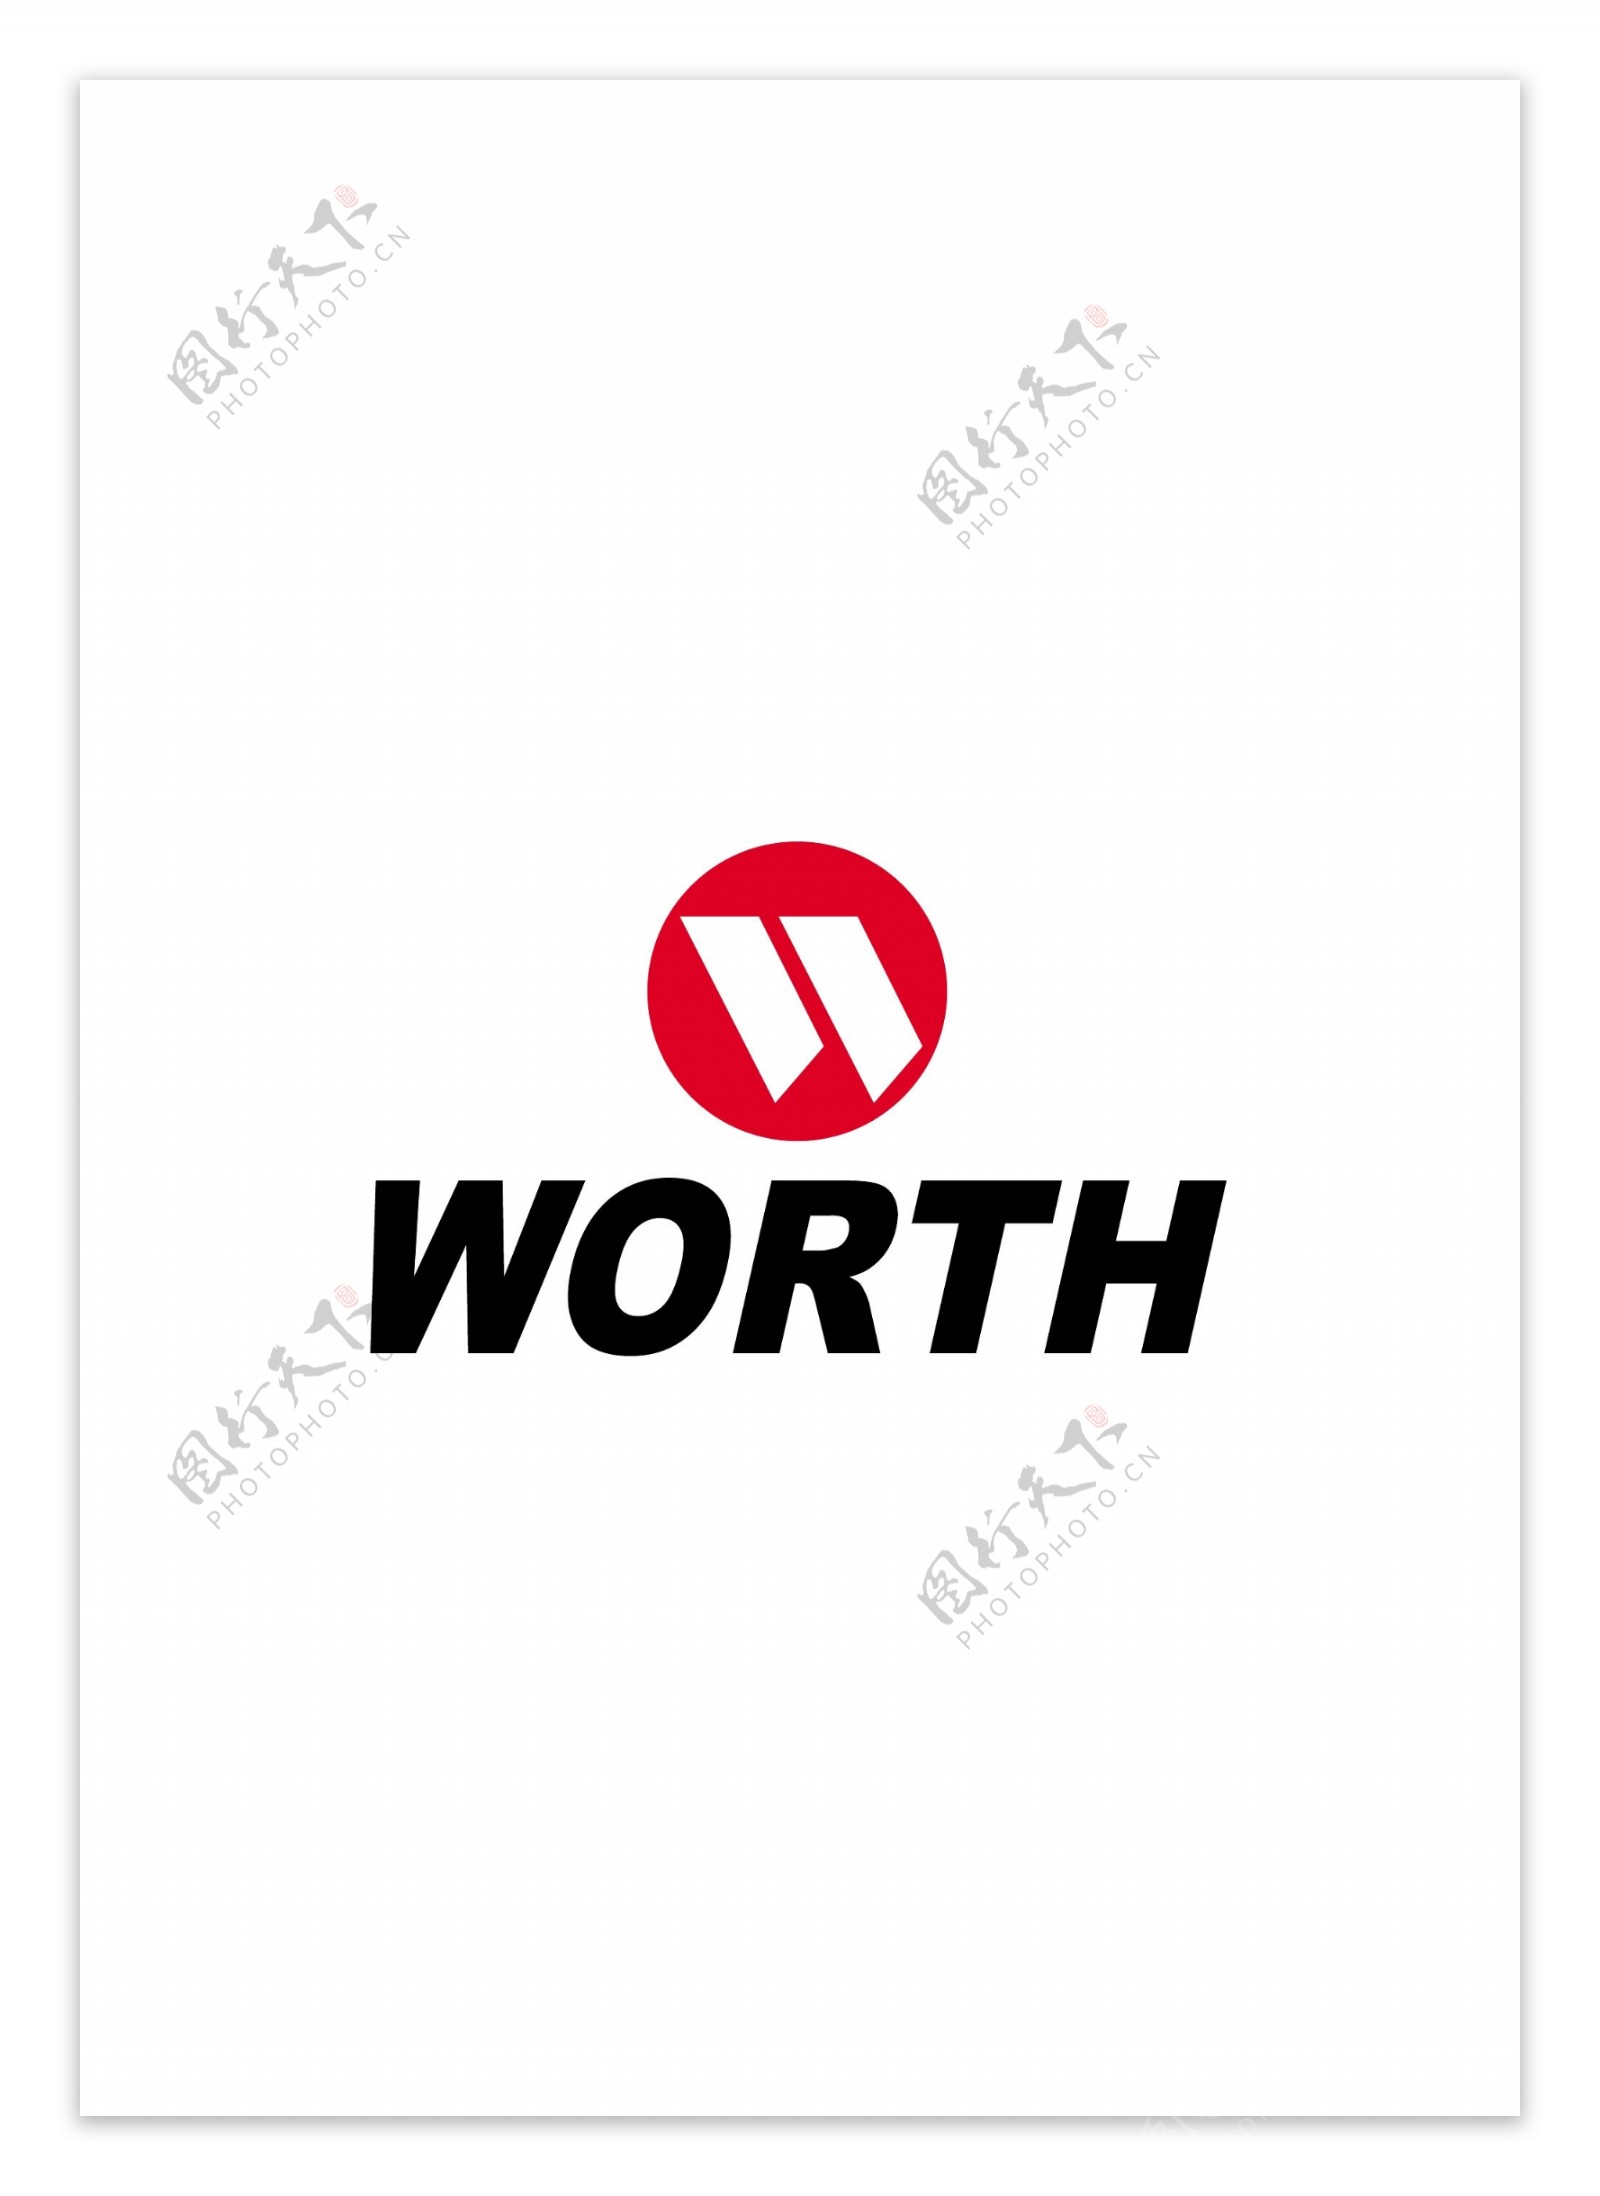 Worthlogo设计欣赏Worth体育比赛LOGO下载标志设计欣赏